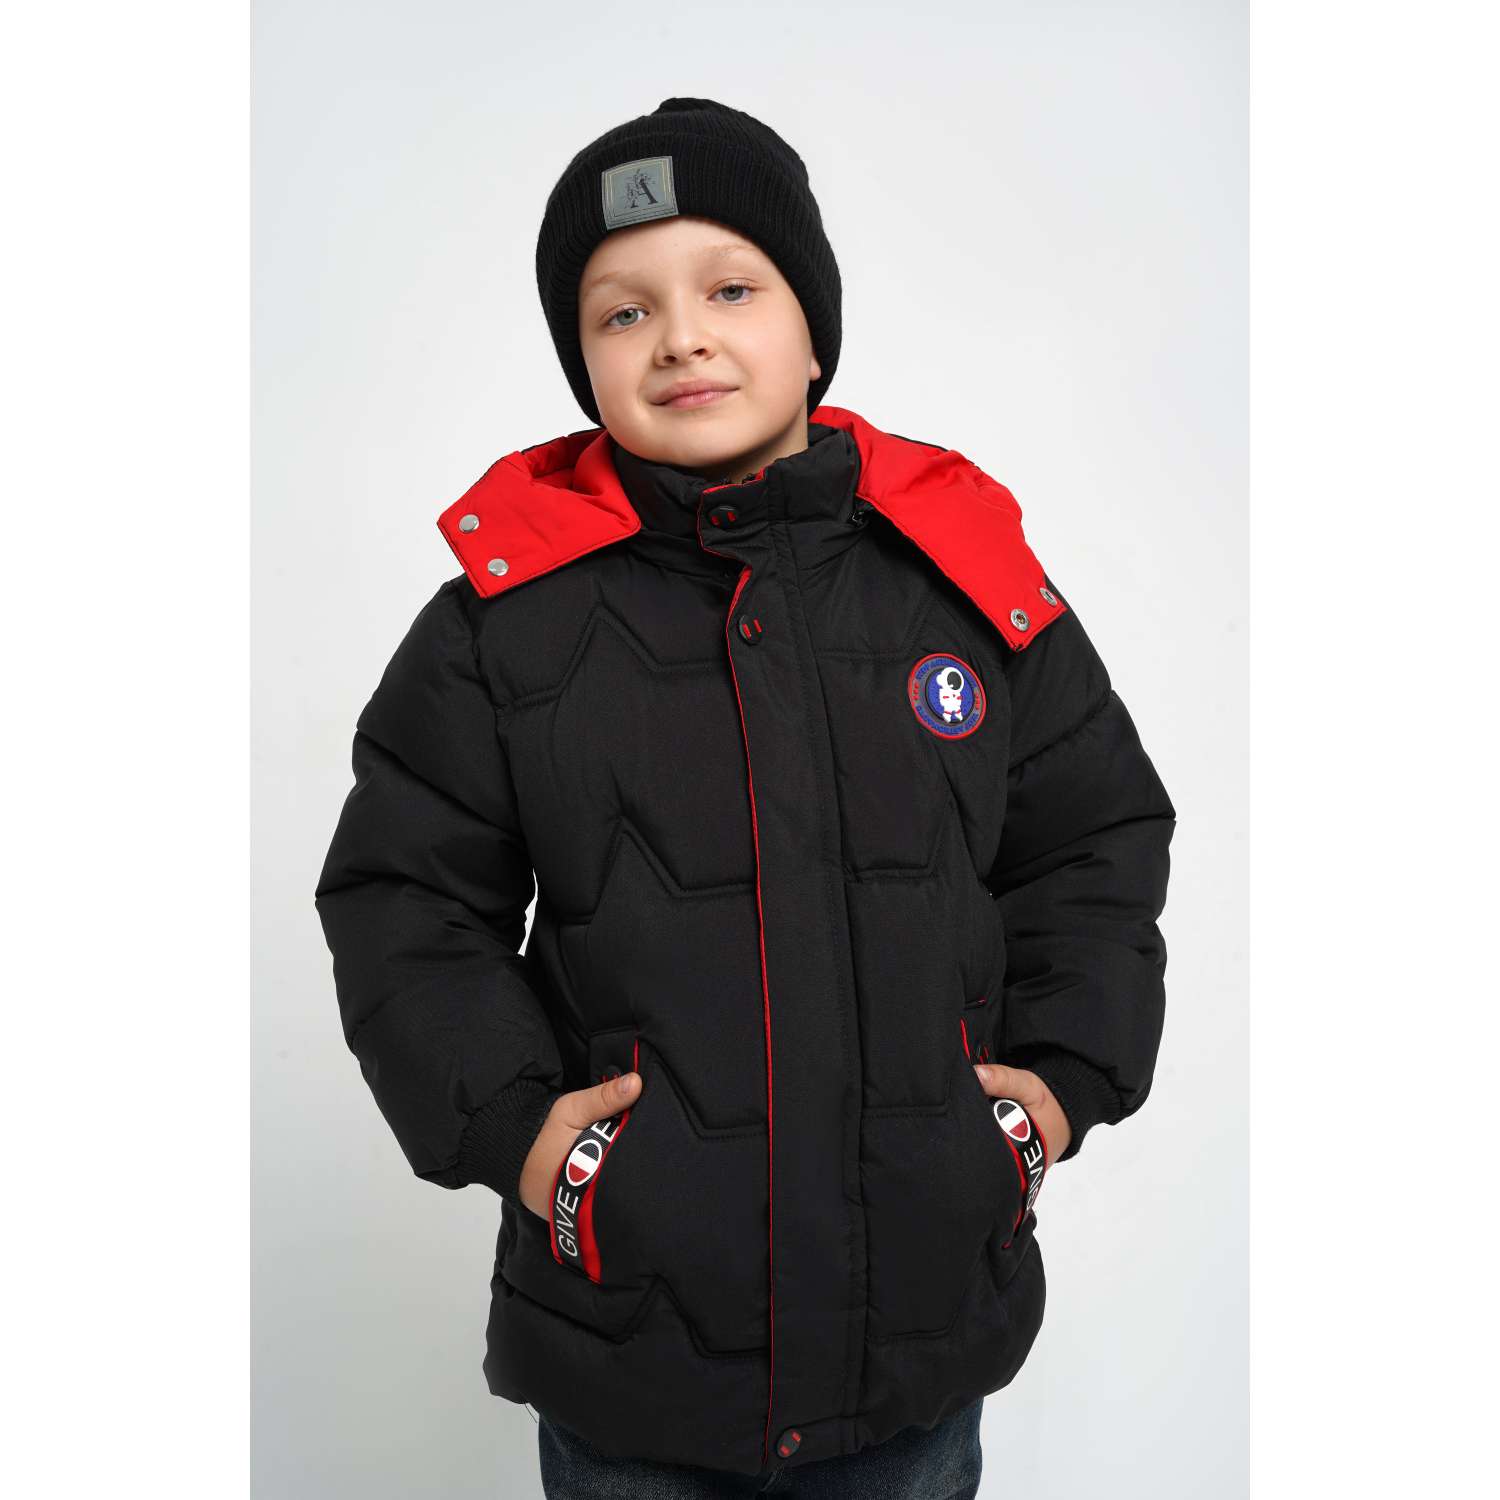 Куртка LAVITA КДД_2/космос куртка для мальчика - фото 1